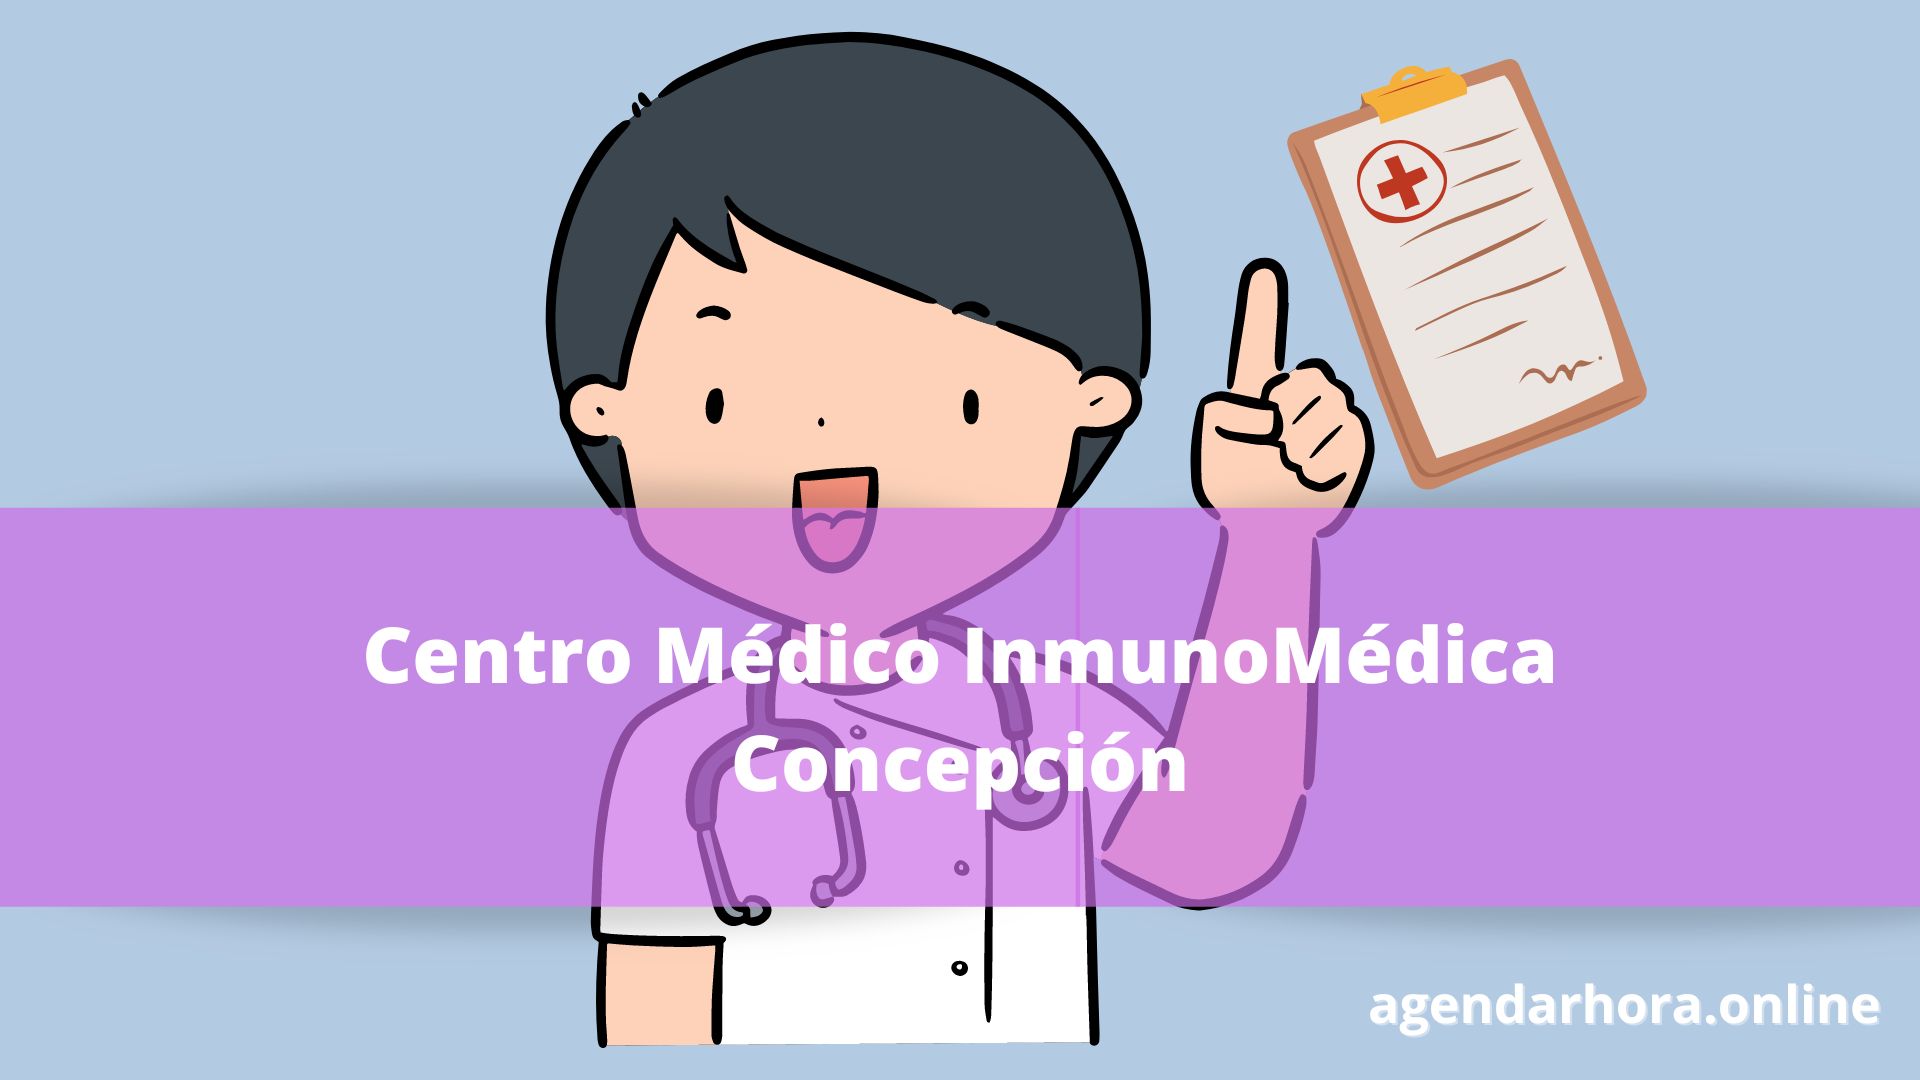 Centro Médico InmunoMédica Concepción